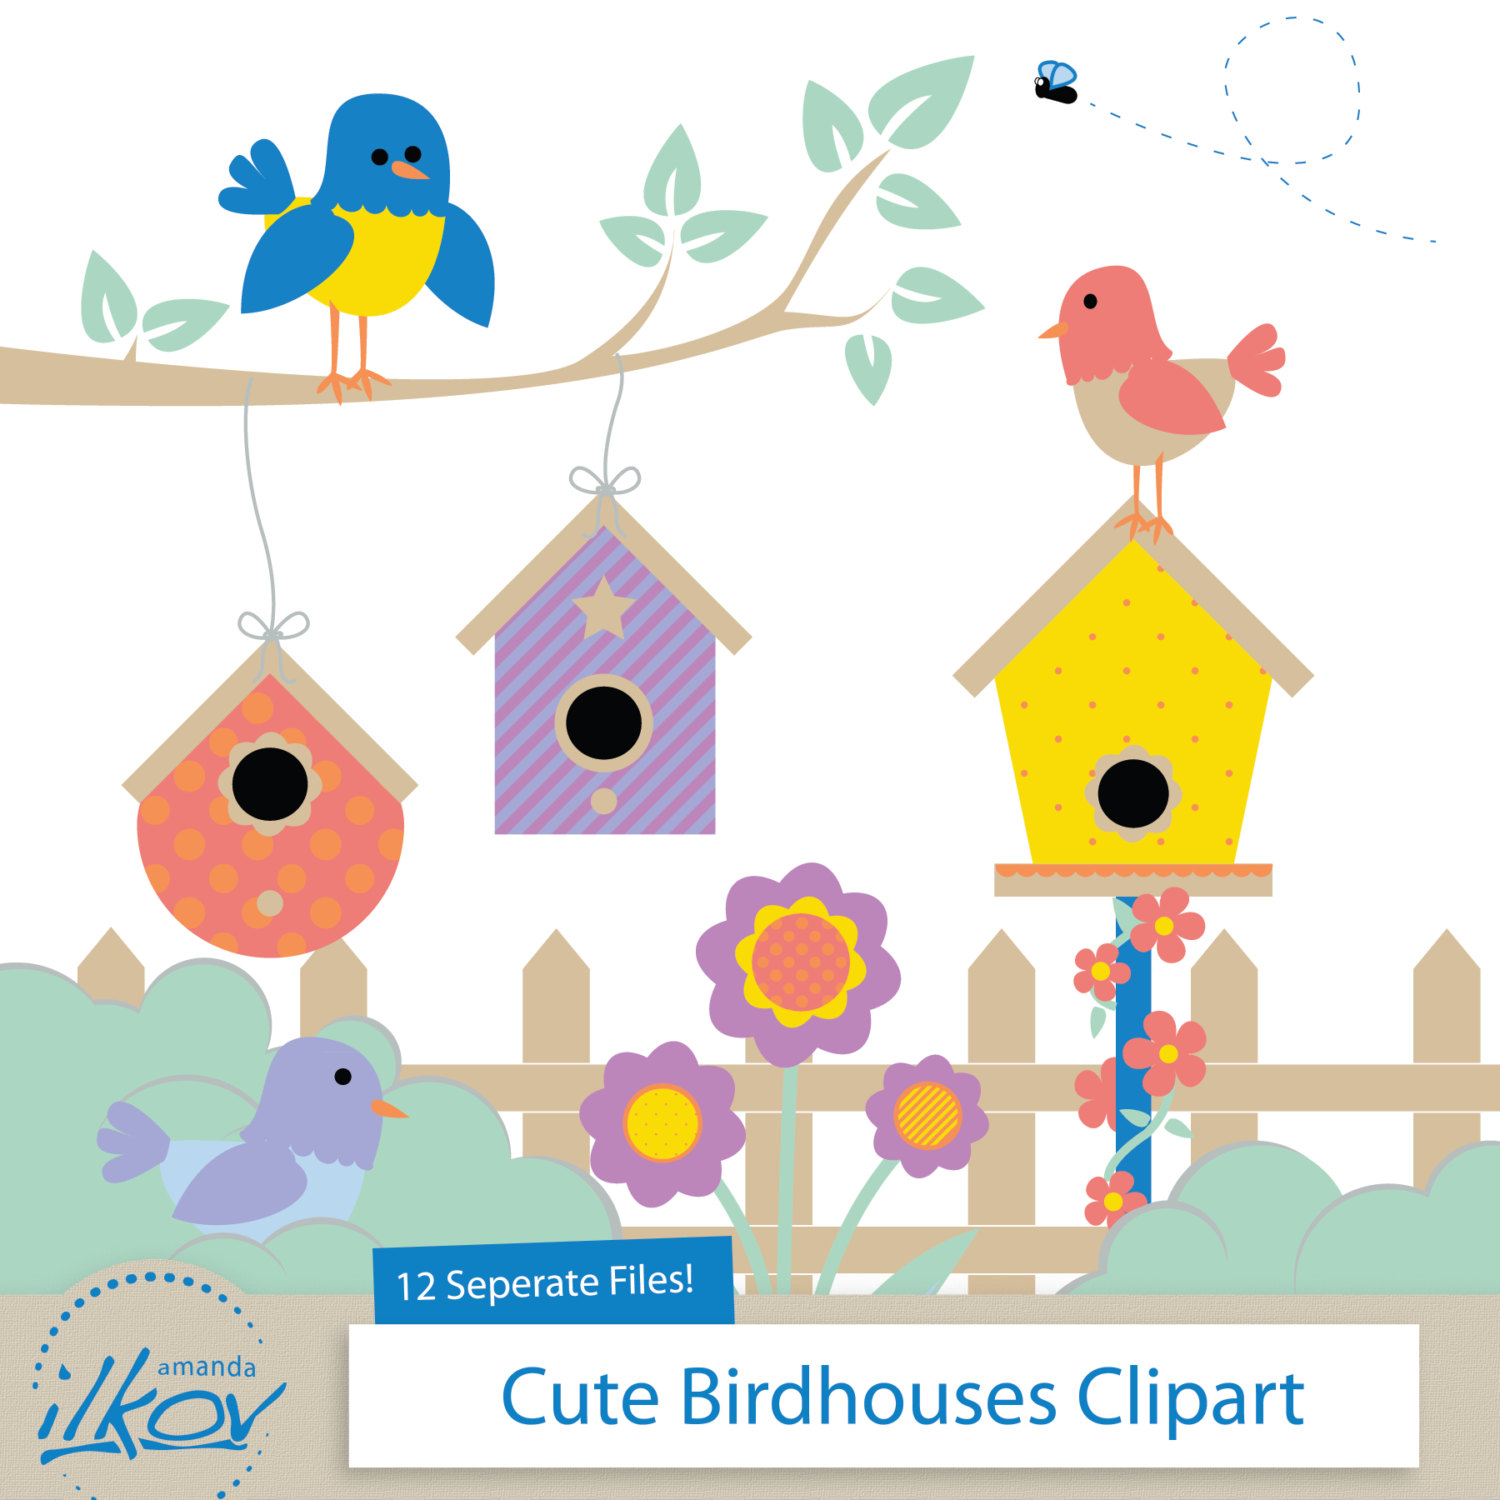 ... birdhouses - Collection o